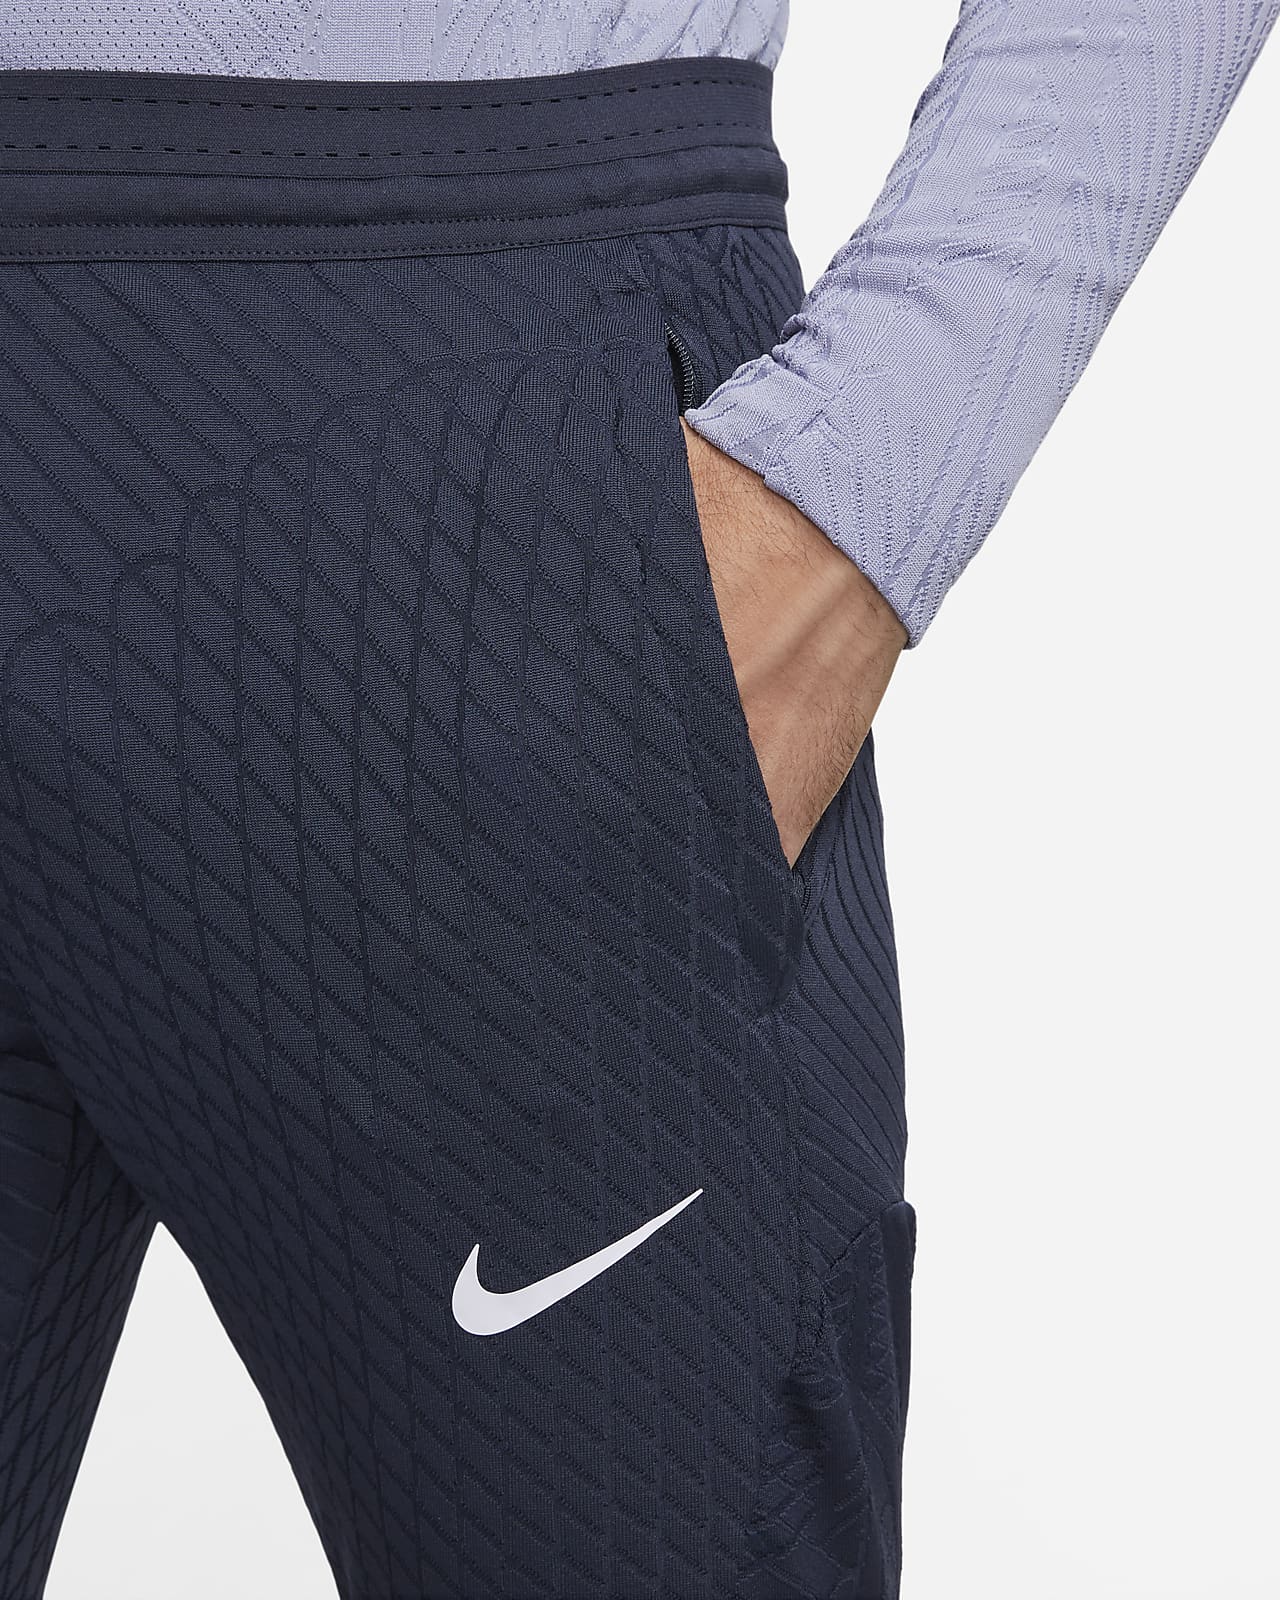 Nike Dri-Fit Academy 22 Pro Pants — KitKing